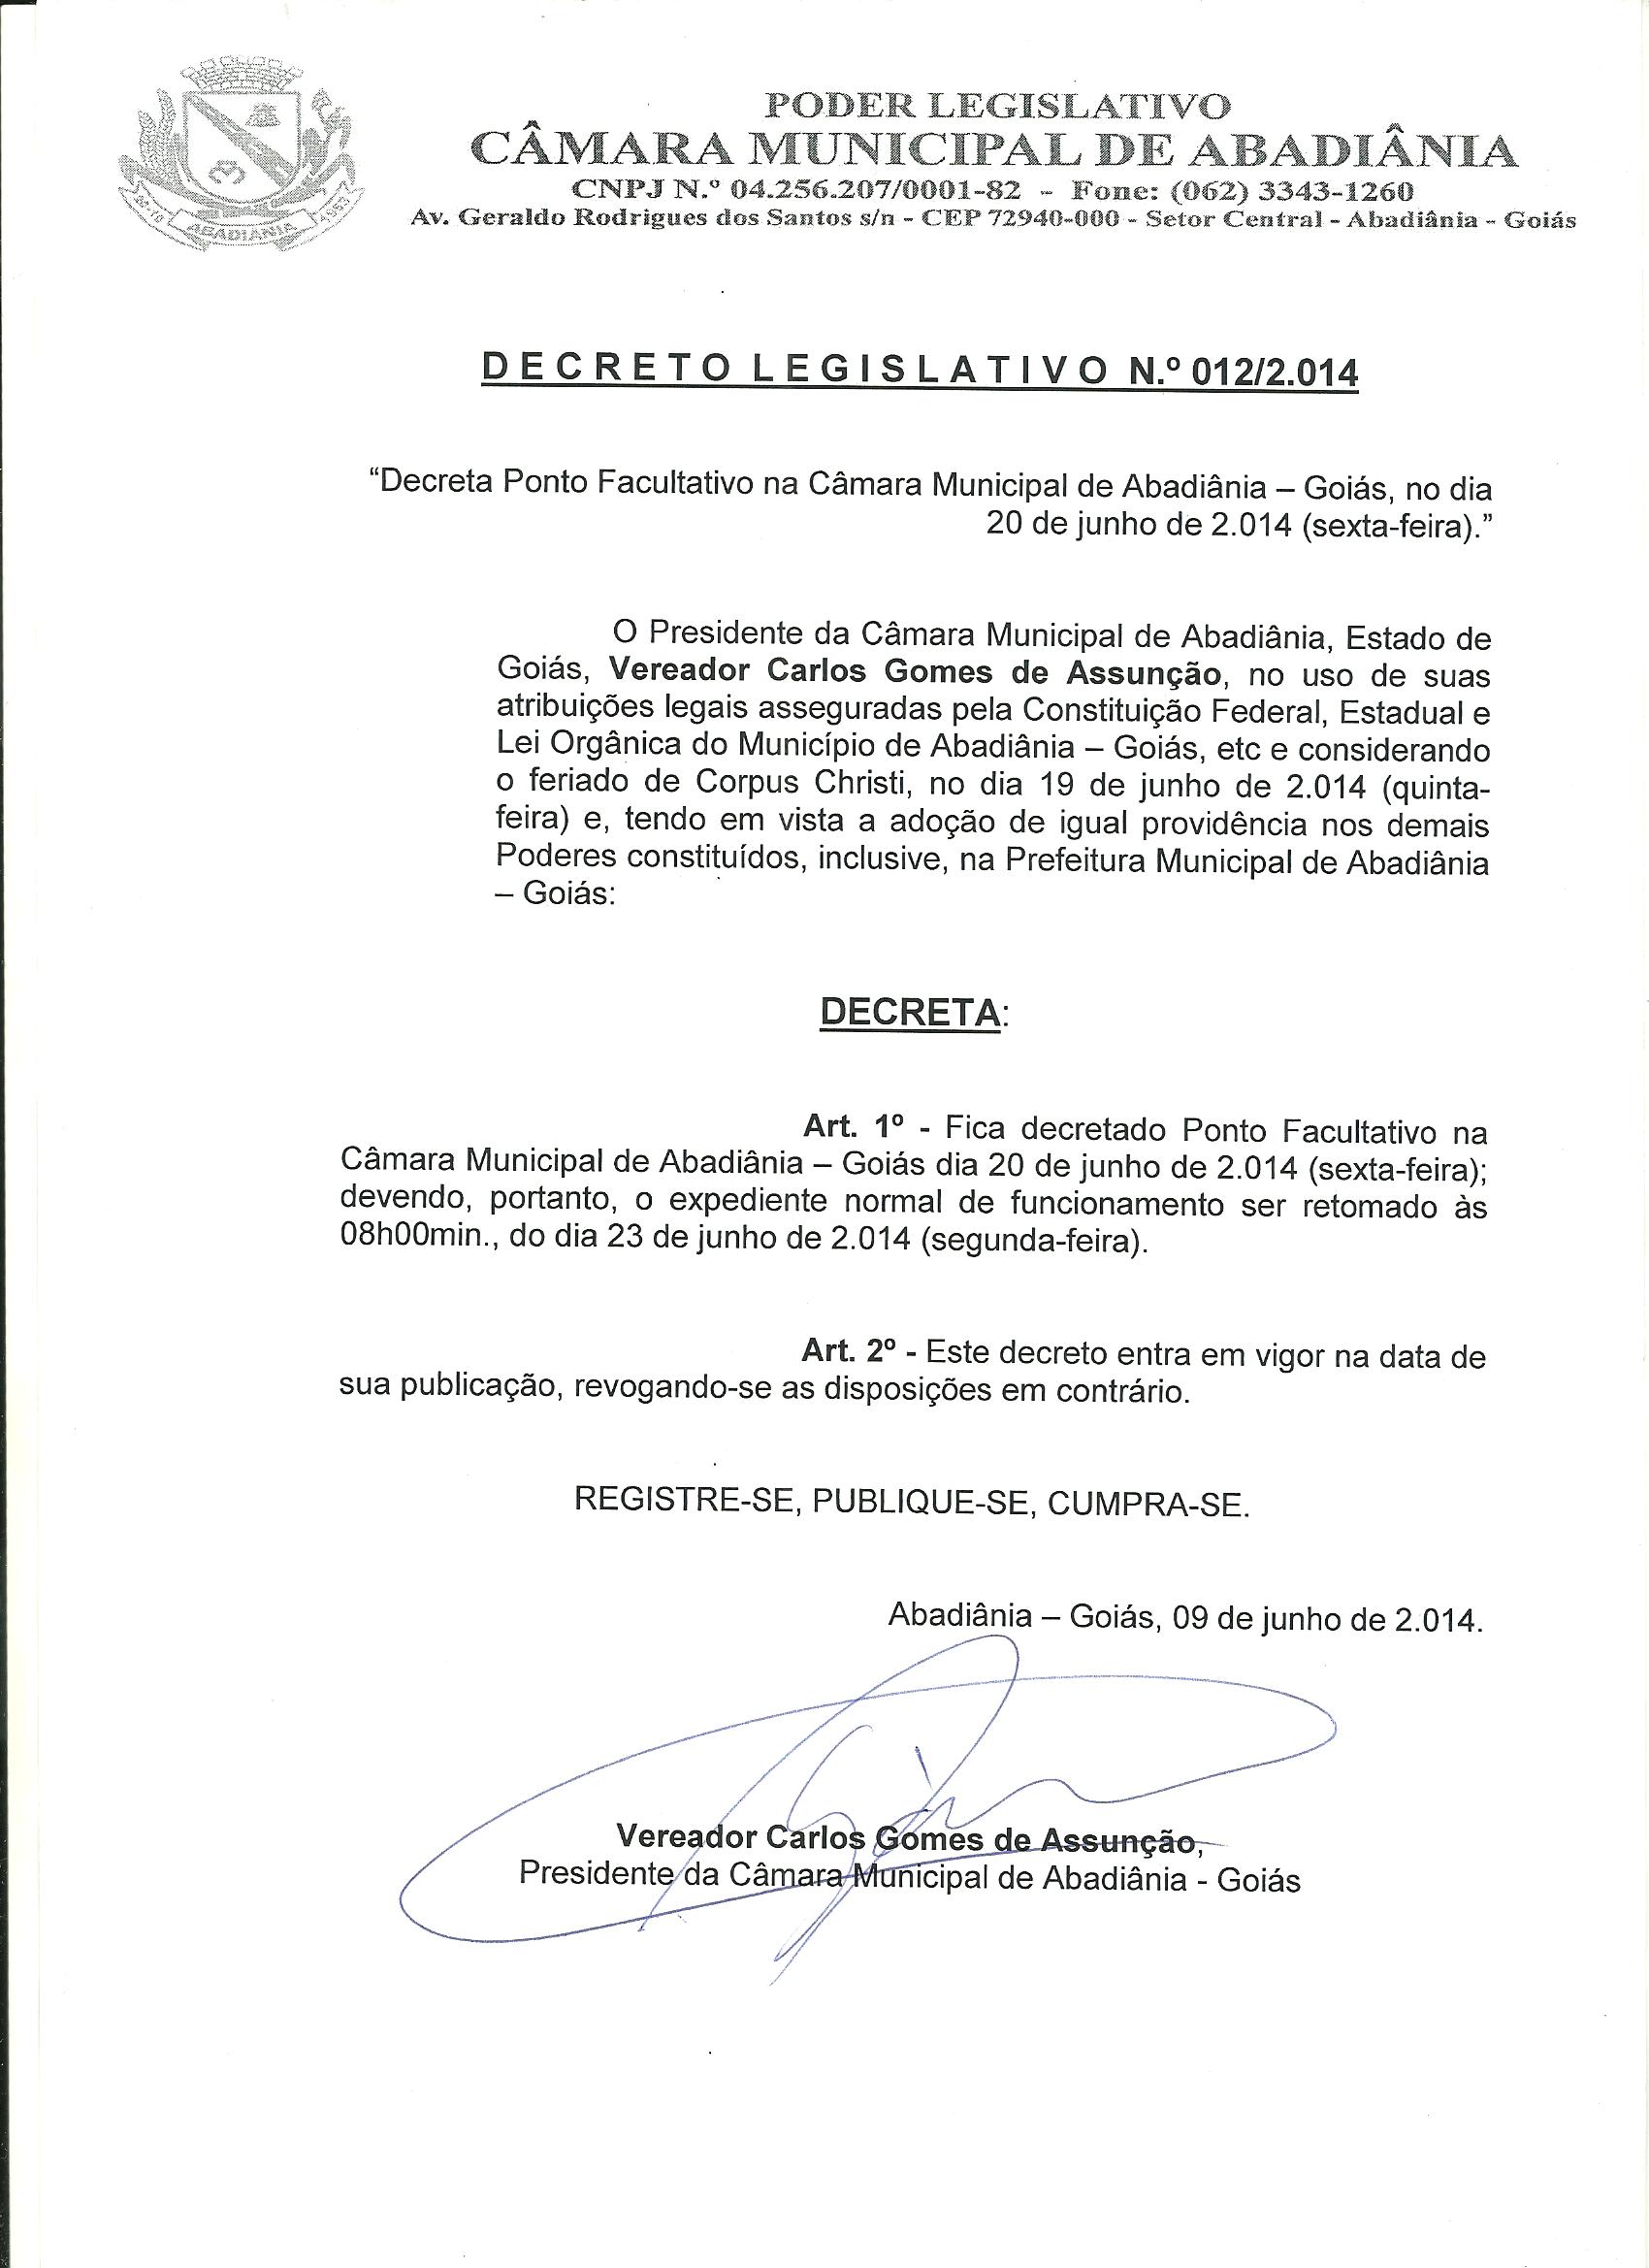 Decreto Legislativo n° 012-2014